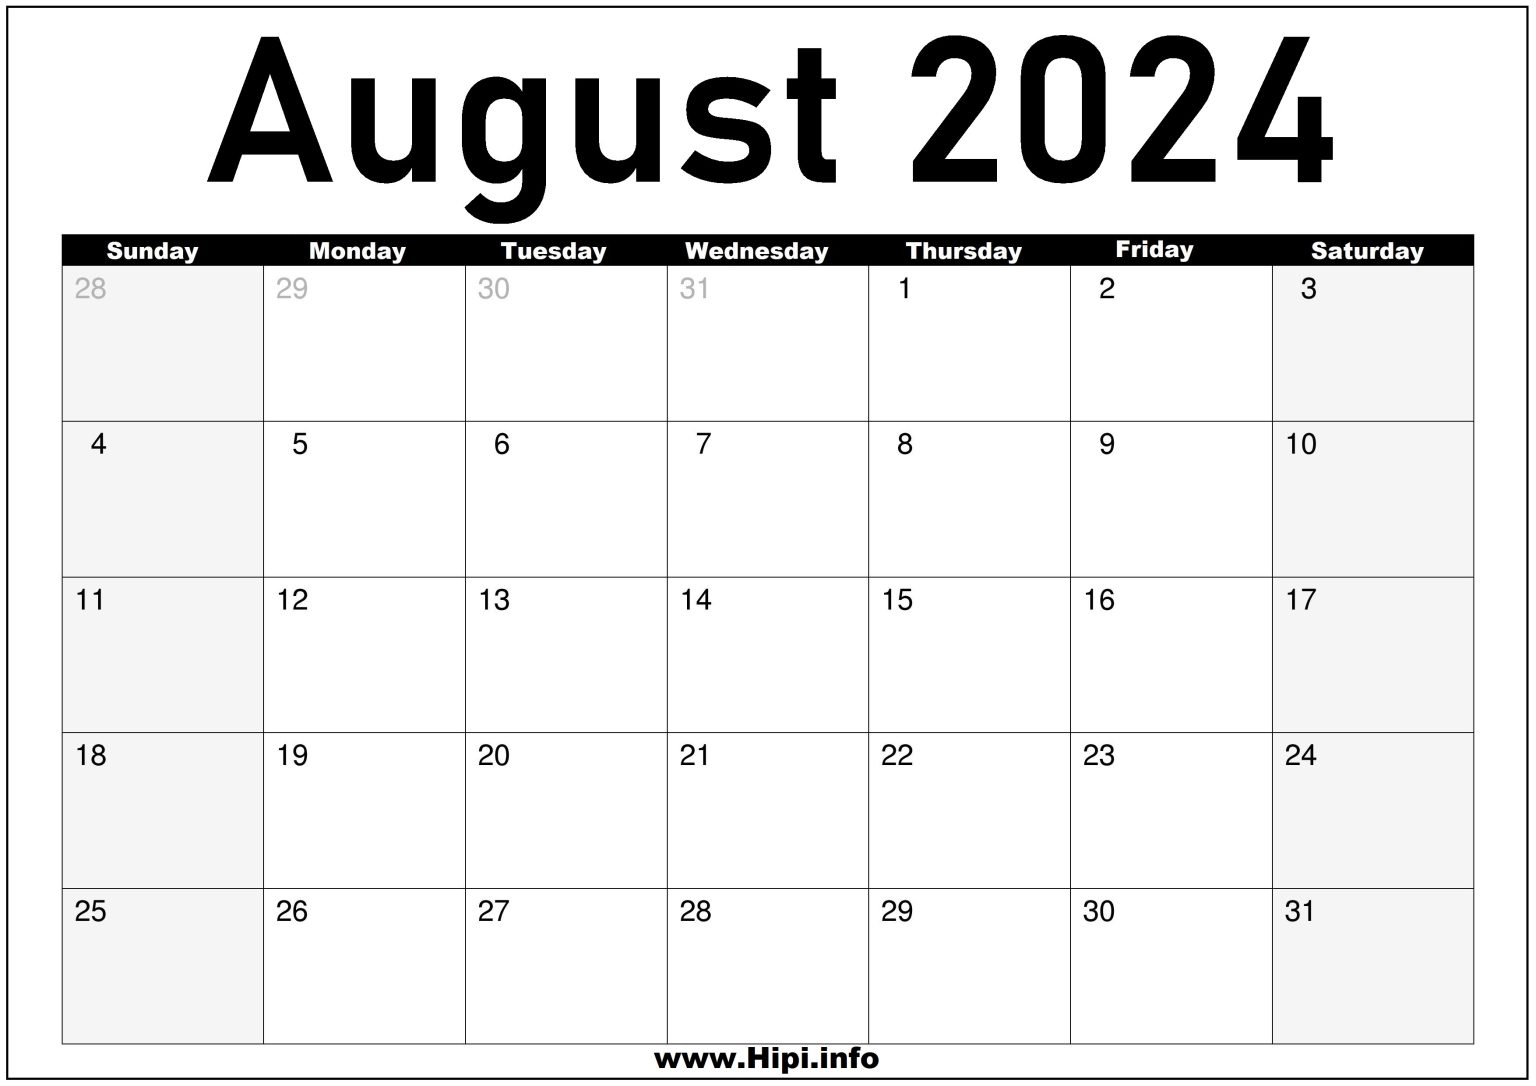 august-2024-monthly-calendar-hipi-info